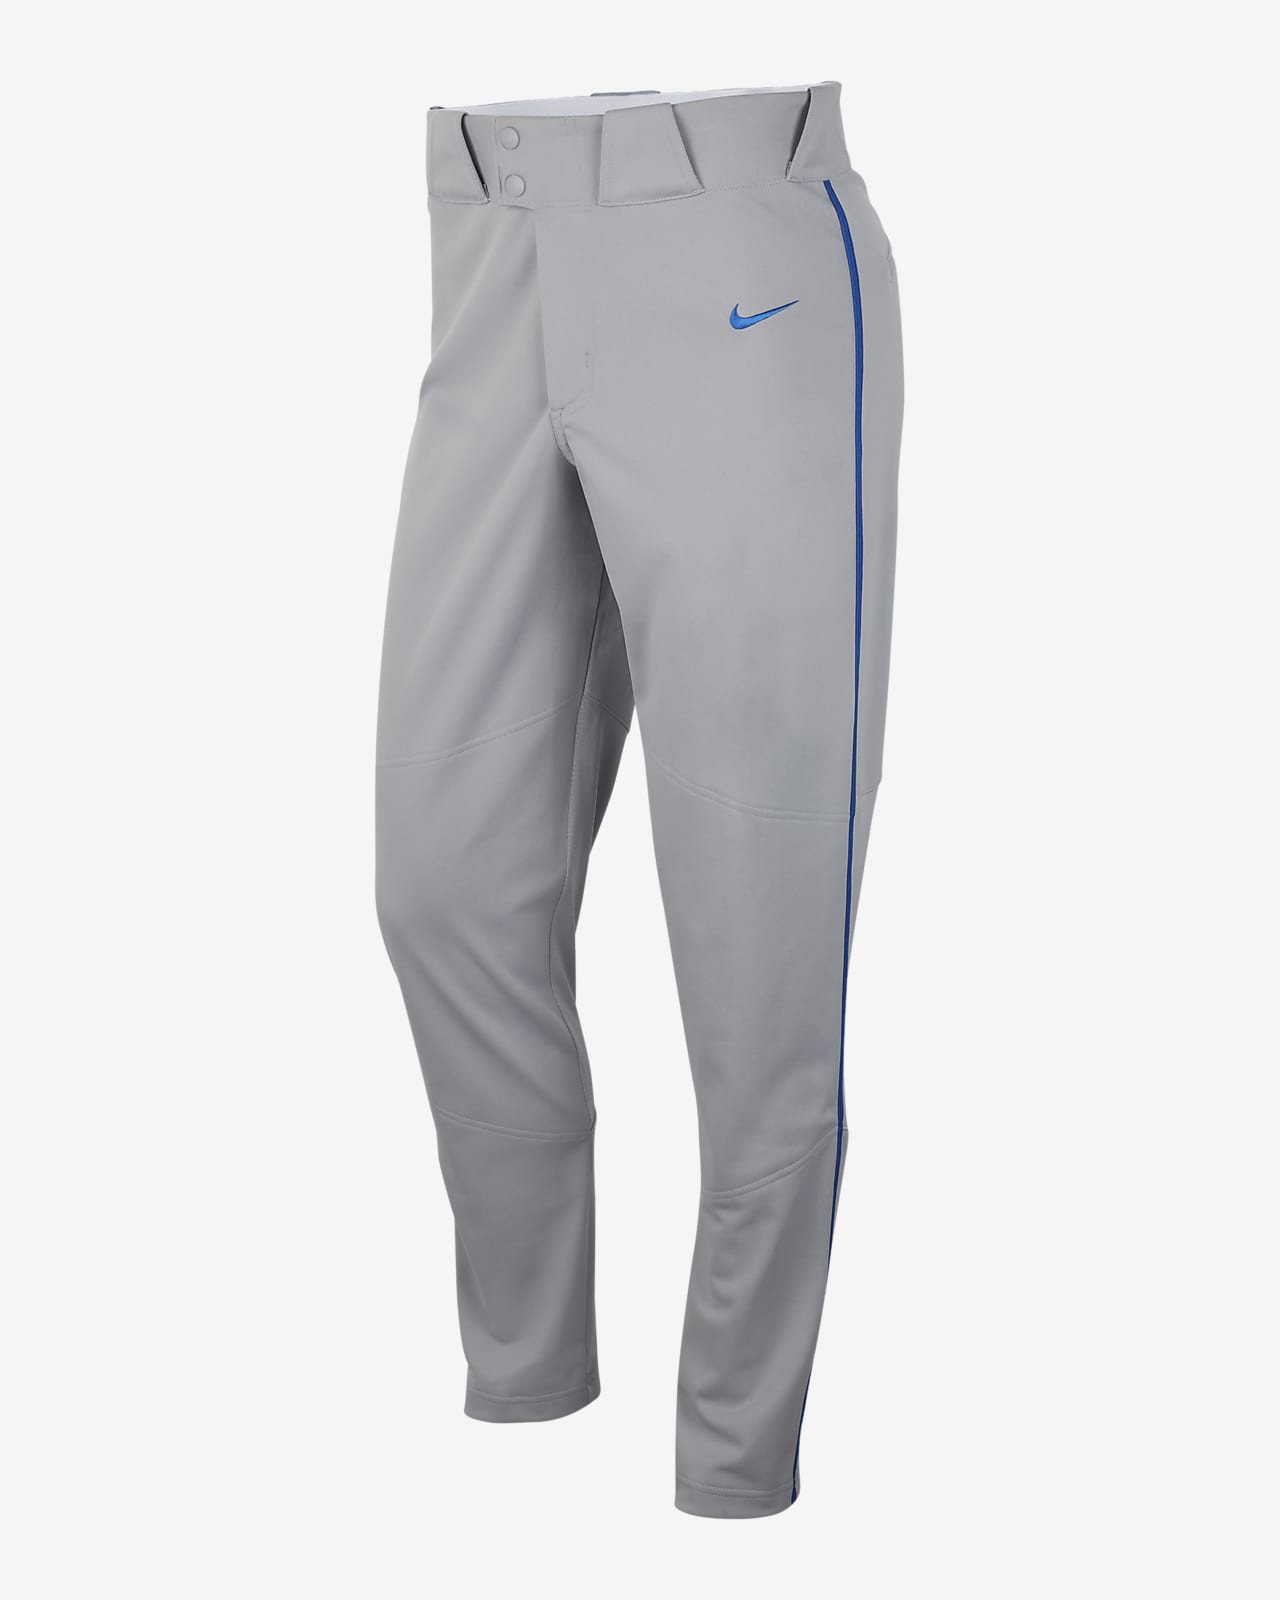 Nike Vapor Select Men's Baseball Pants.